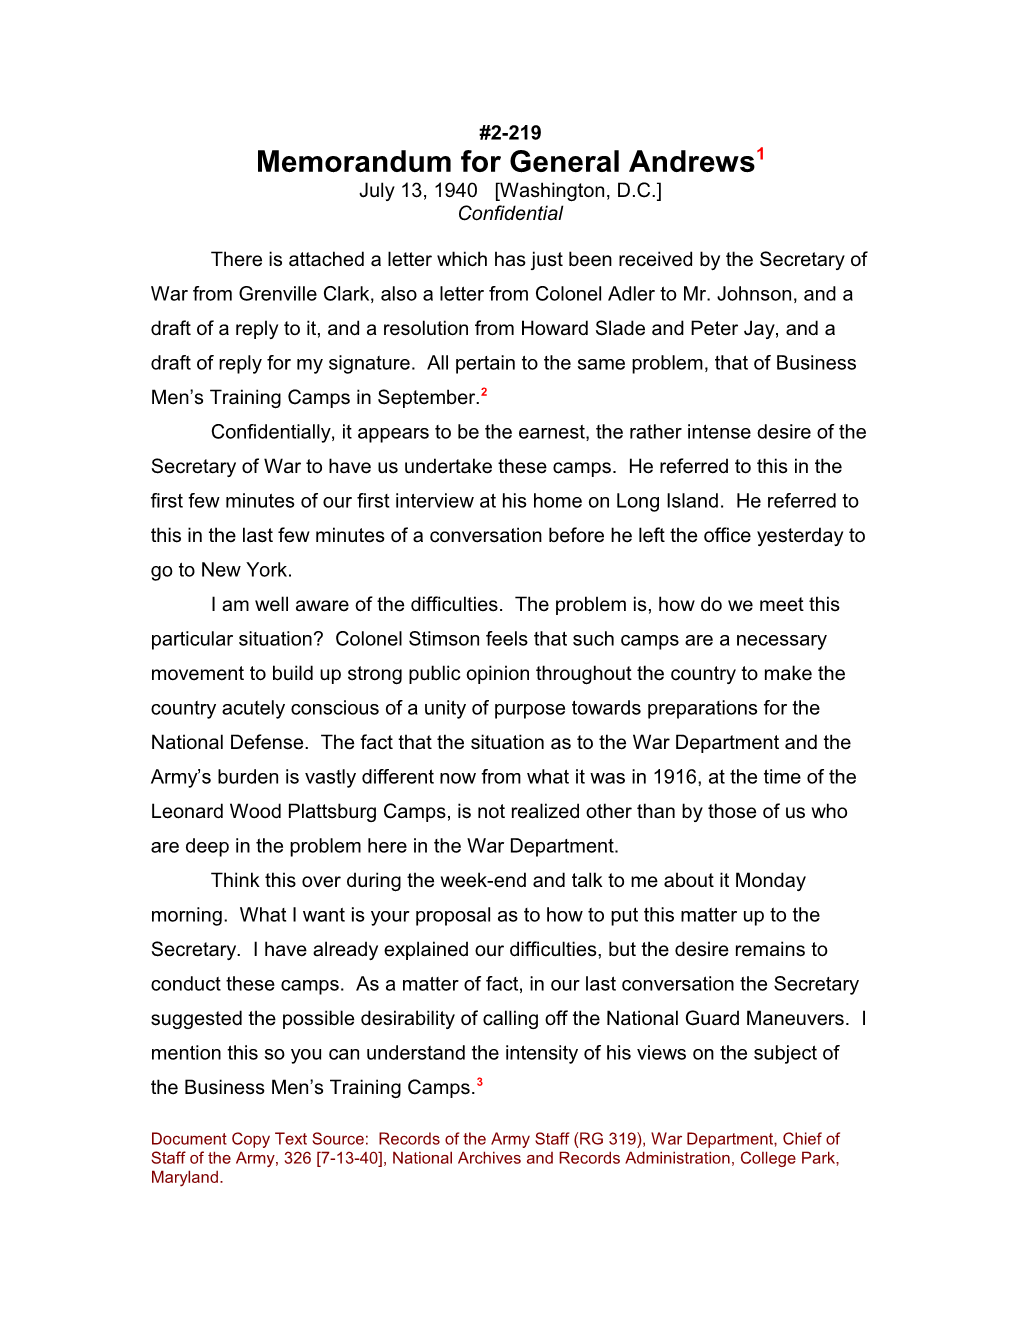 Memorandum for General Andrews1